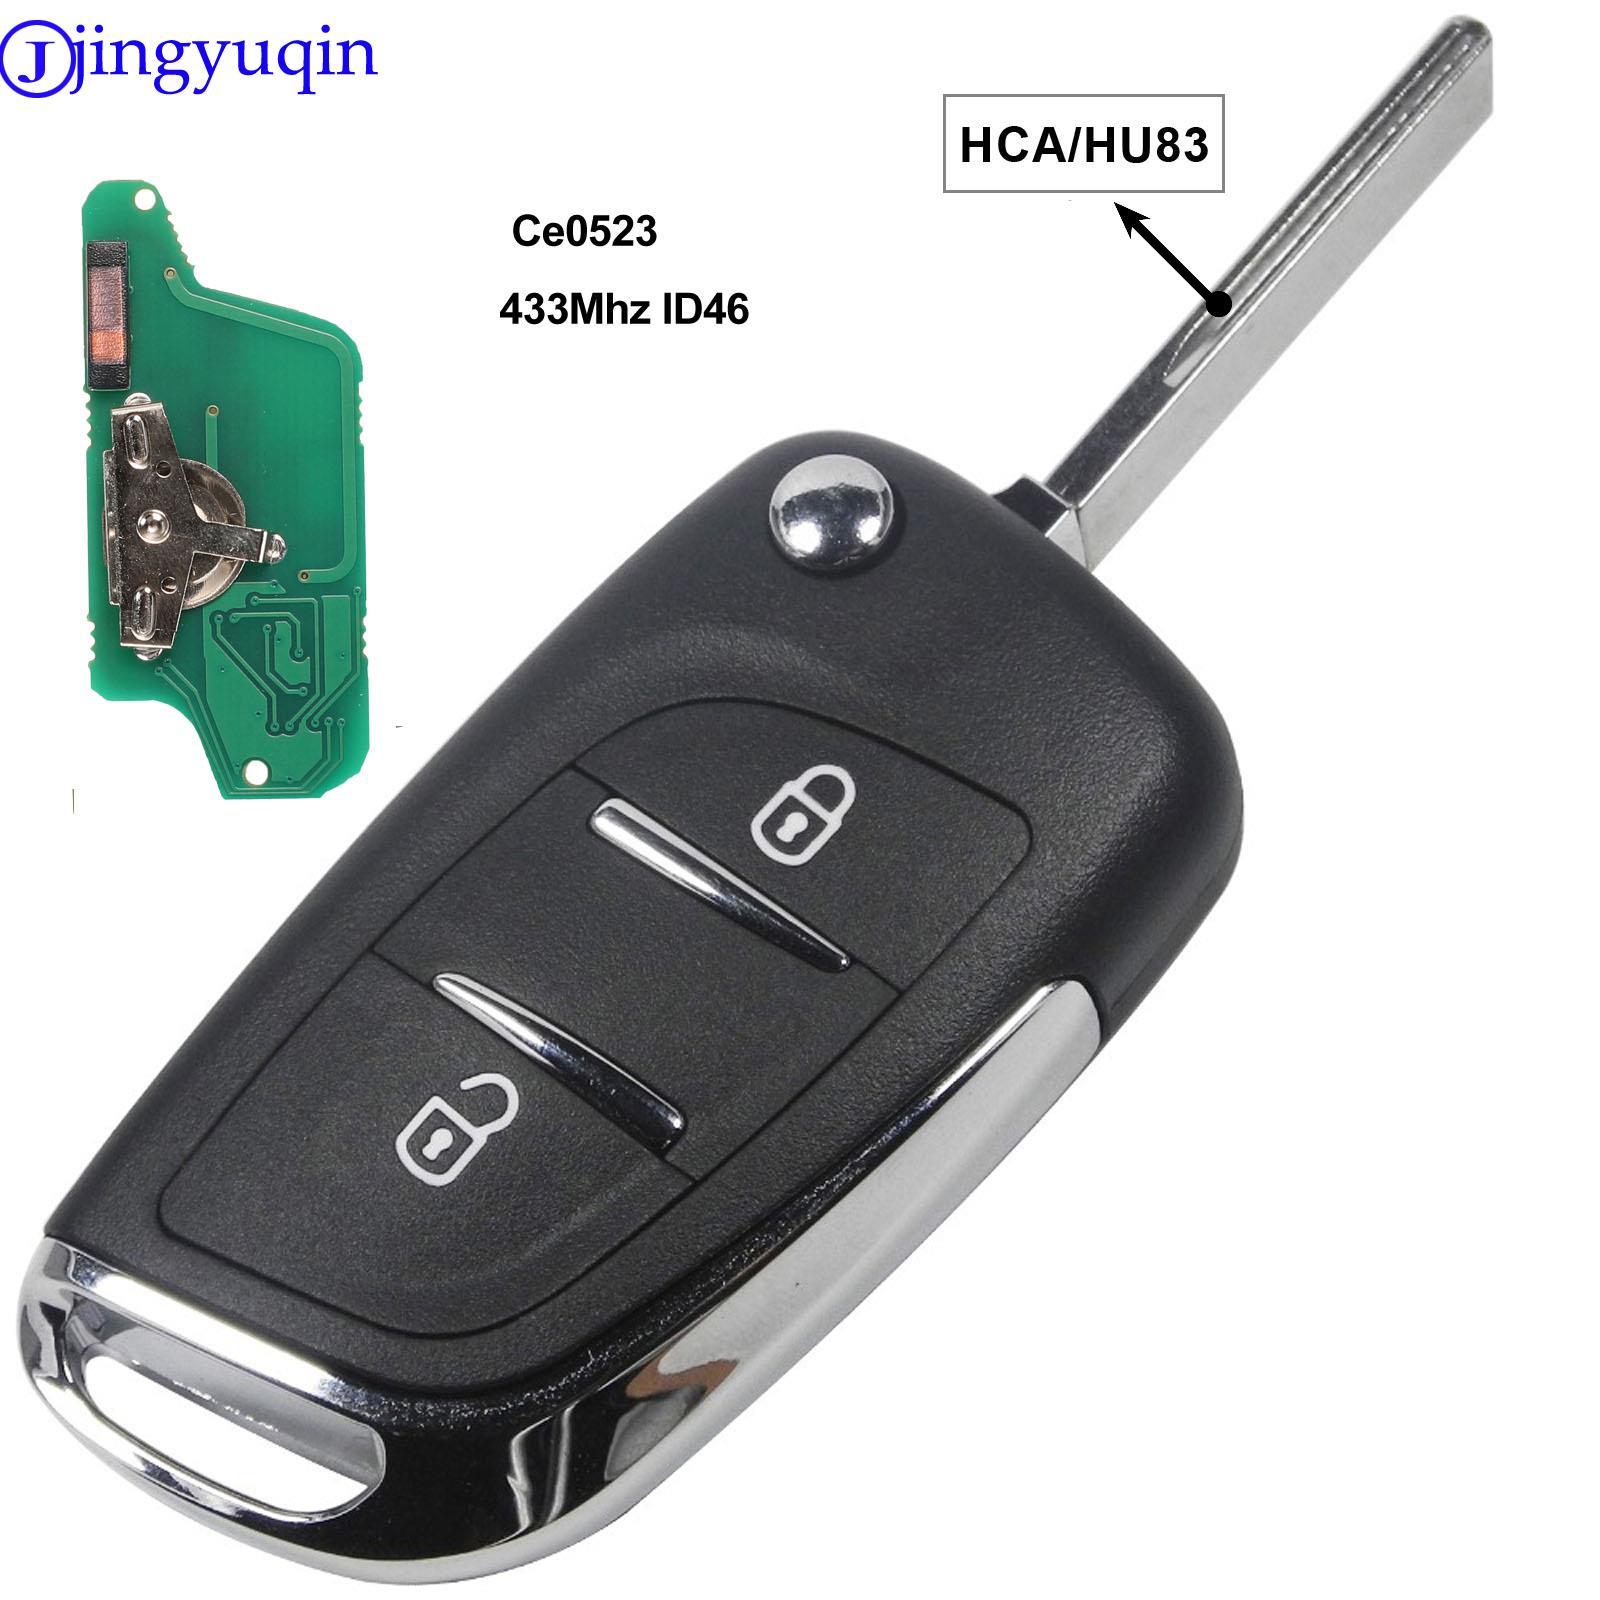 Изображение товара: Jingyuqin ASK/FSK 433 МГц ID46 чип CE0523 модифицированный дистанционный брелок с откидной крышкой для Peugeot 307 407 607 HU83/VA2 Blade 2 3 кнопочный ключ